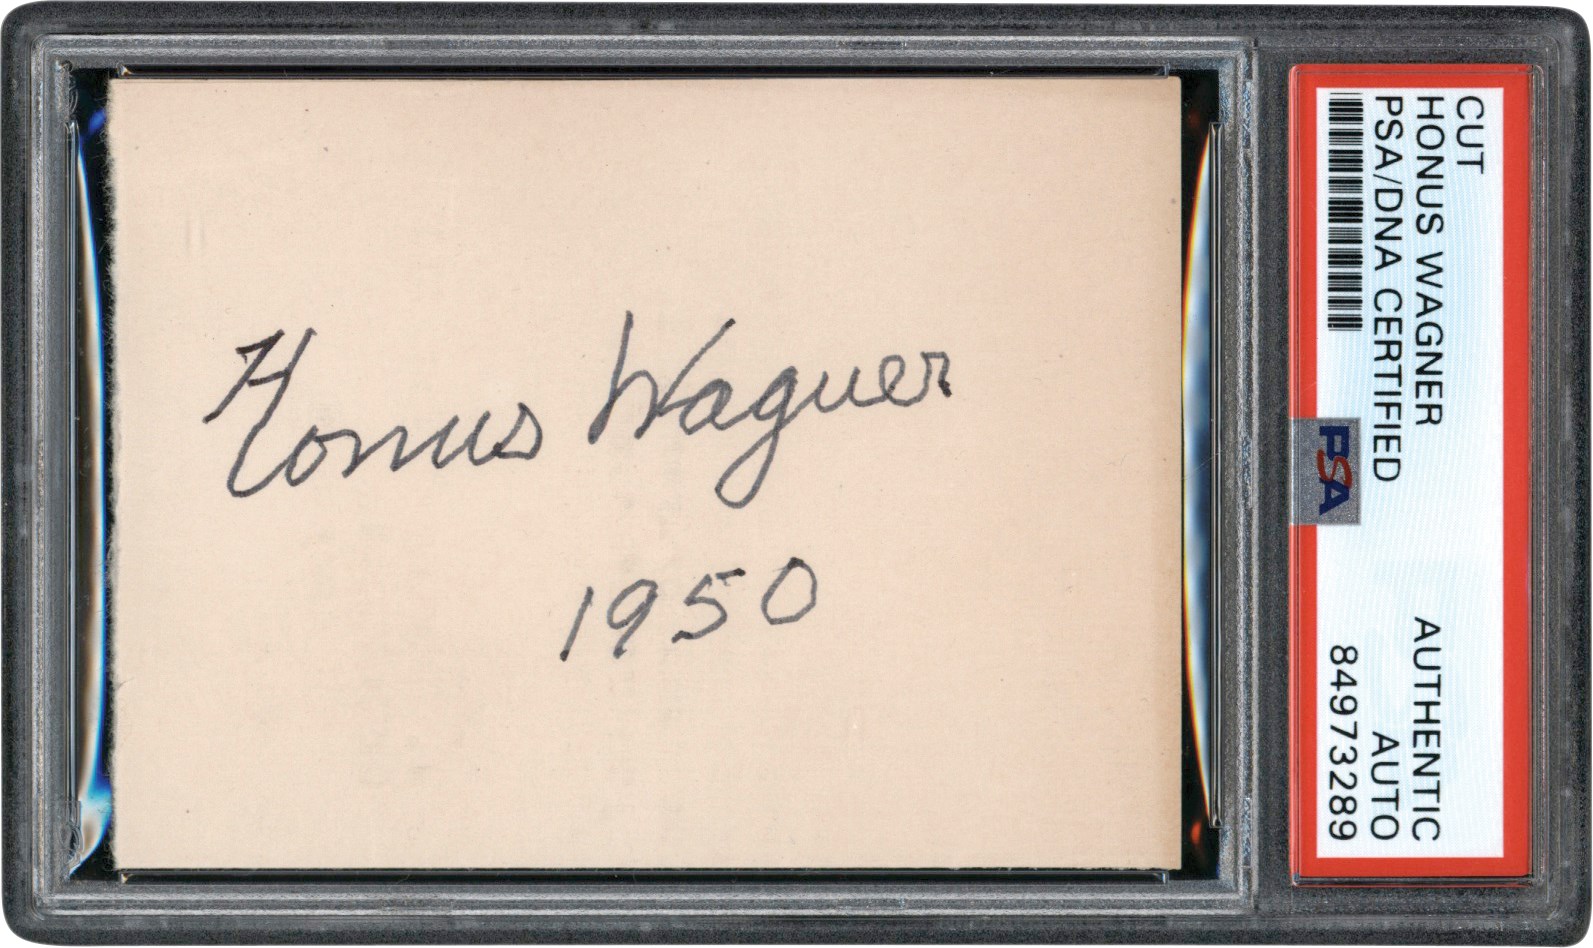 - Gorgeous 1950 Honus Wagner Autograph (PSA)